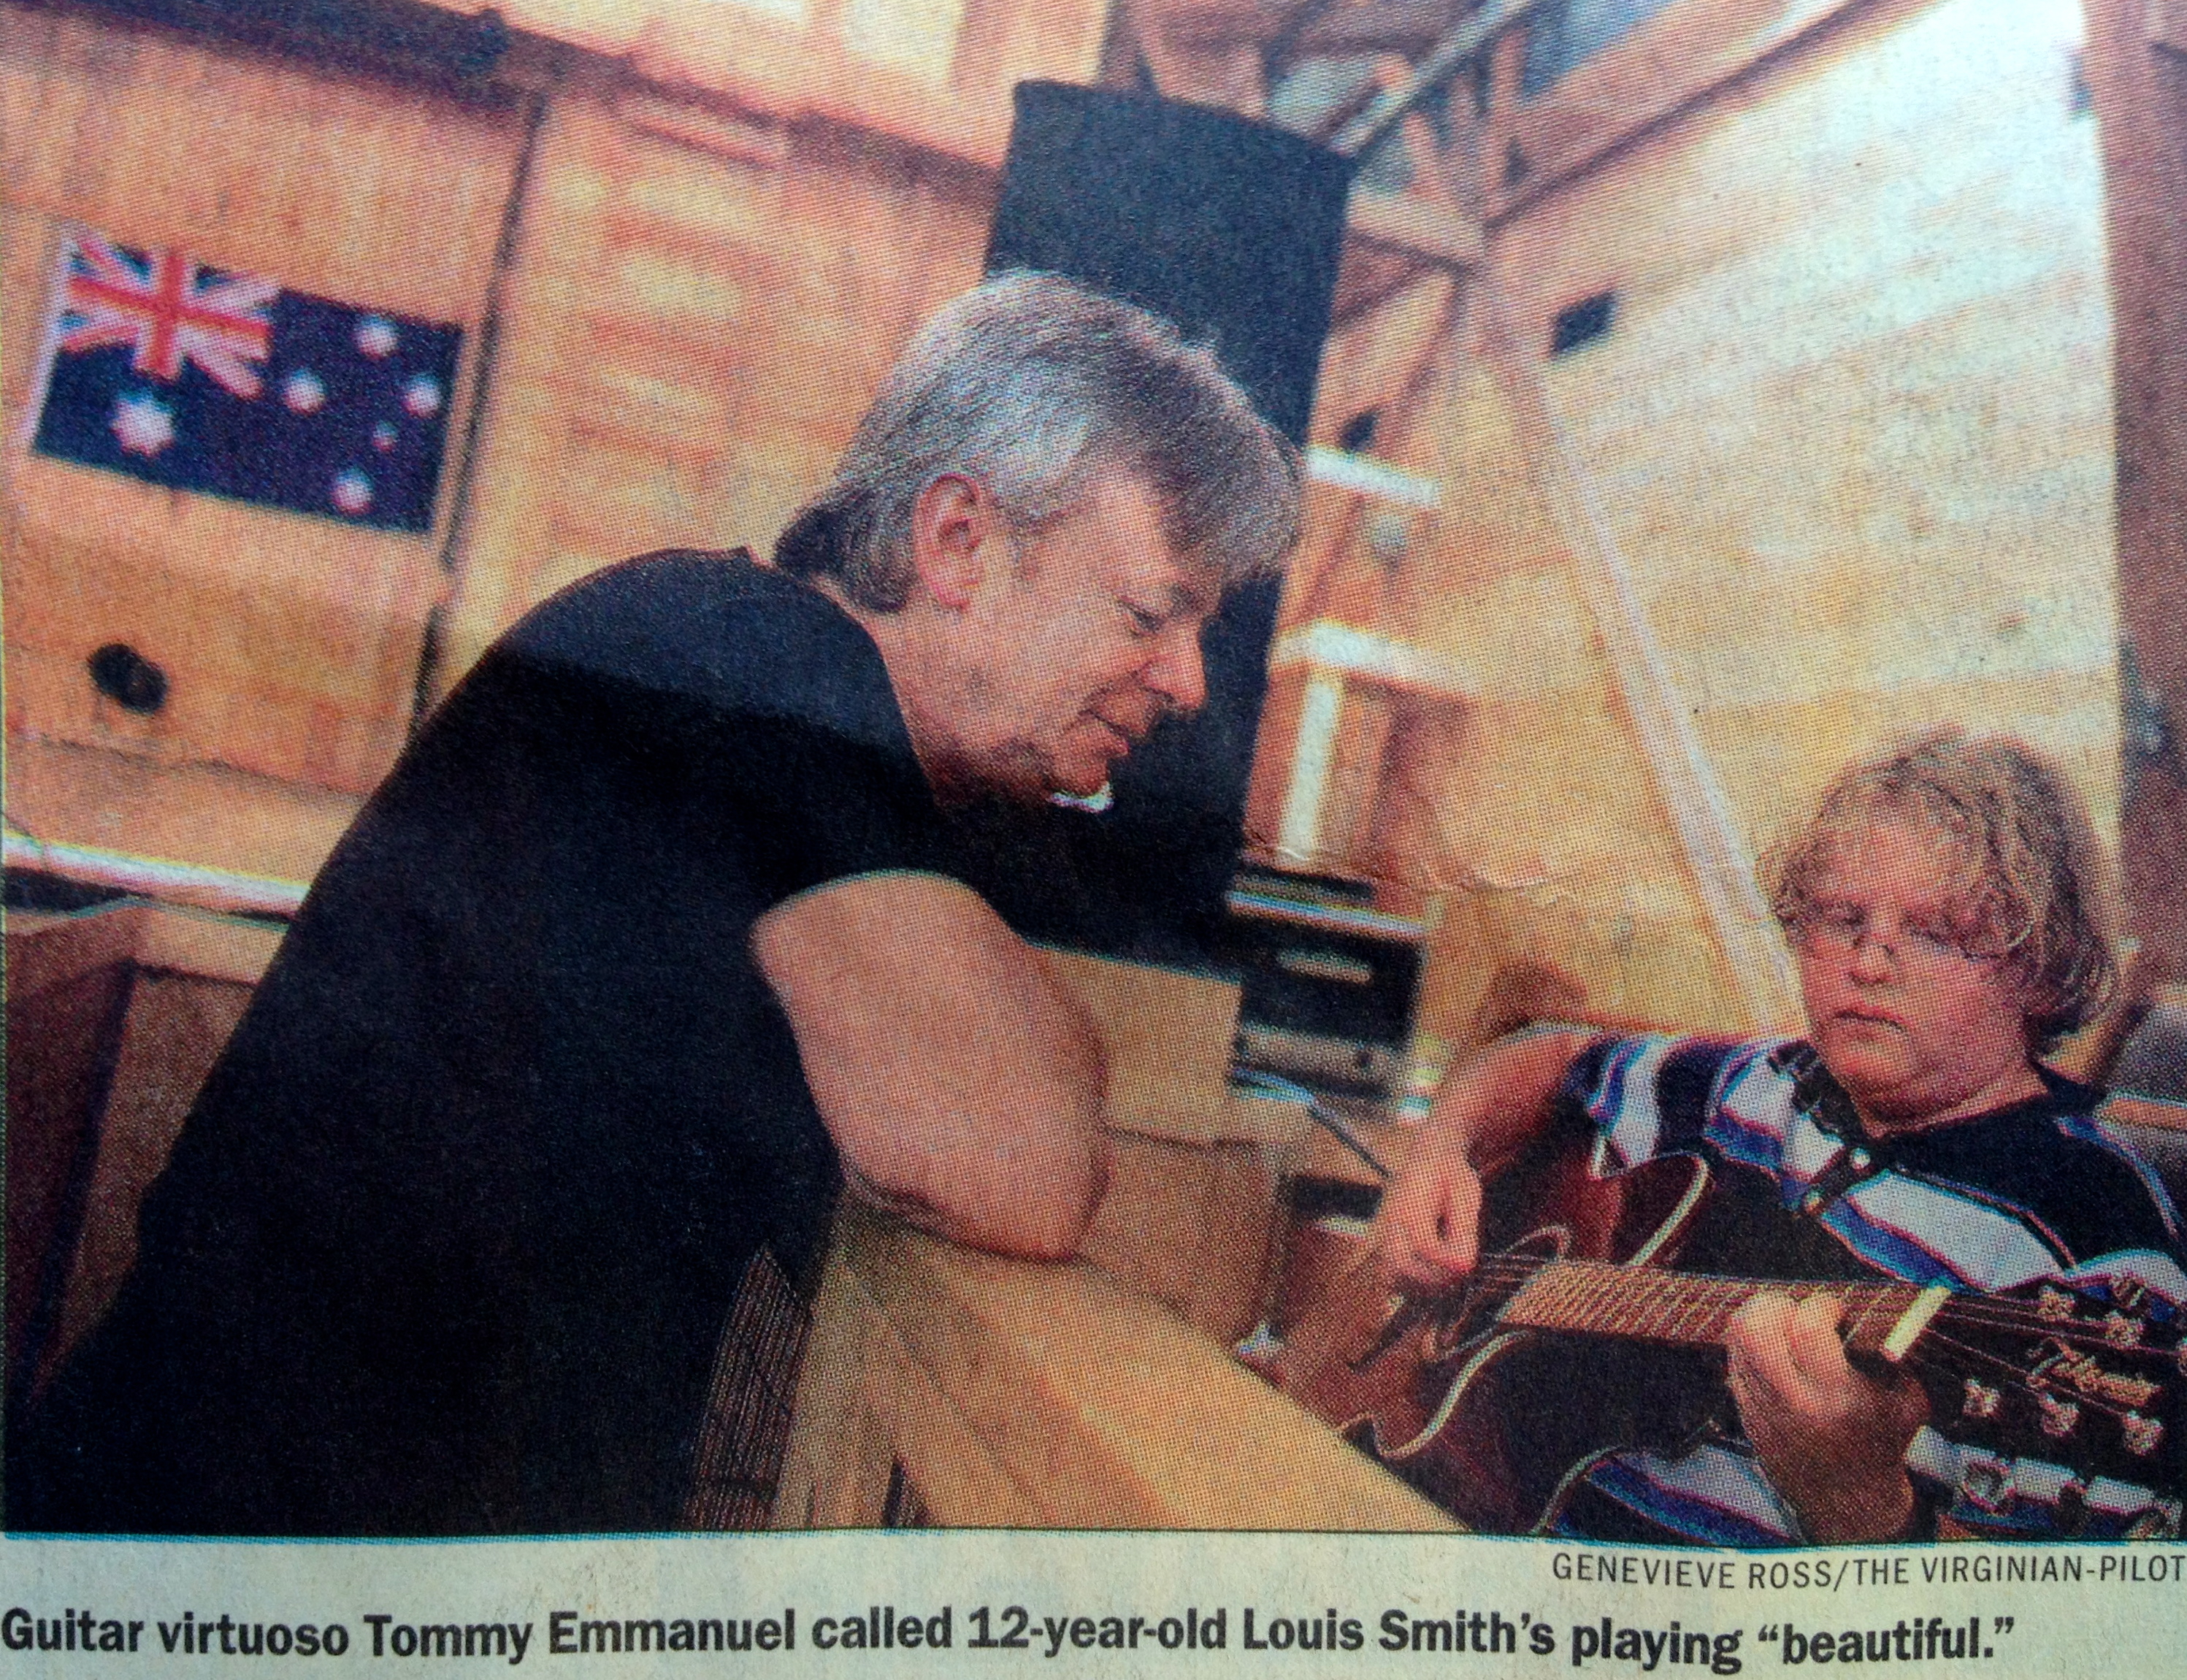 Louis & Tommy Emmanuel